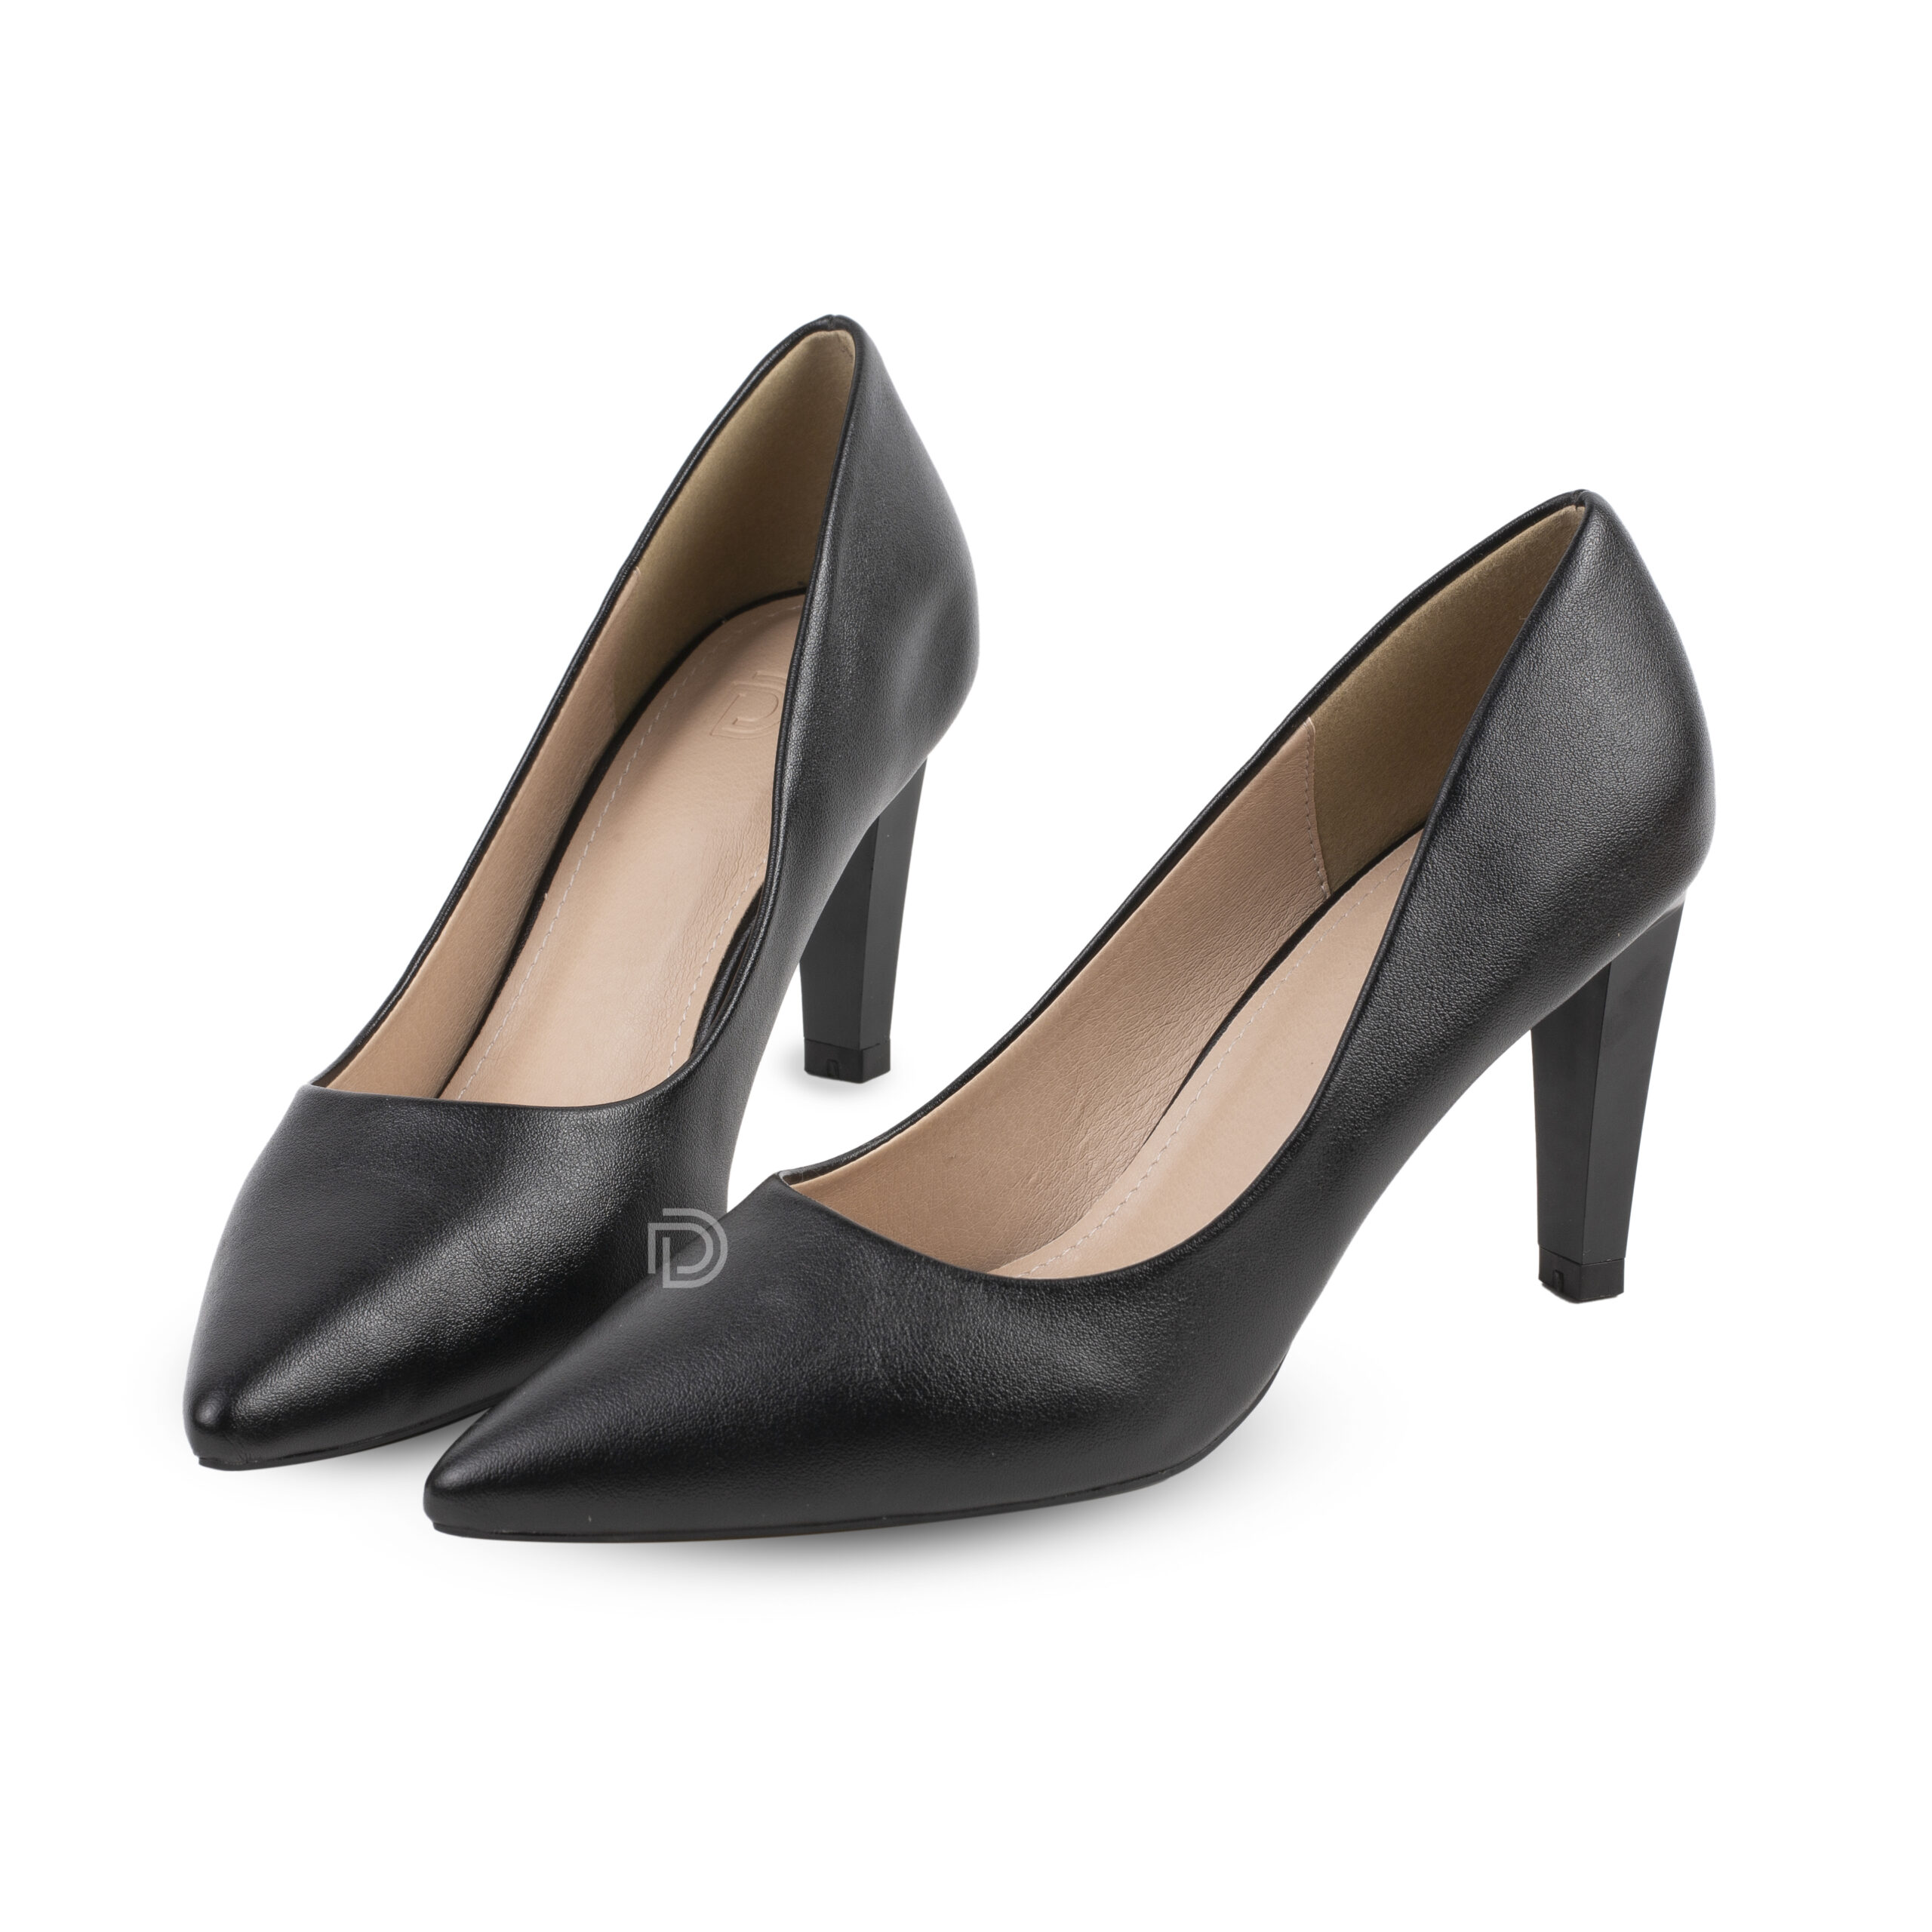 GD02 - Giày cao gót nữ đen 